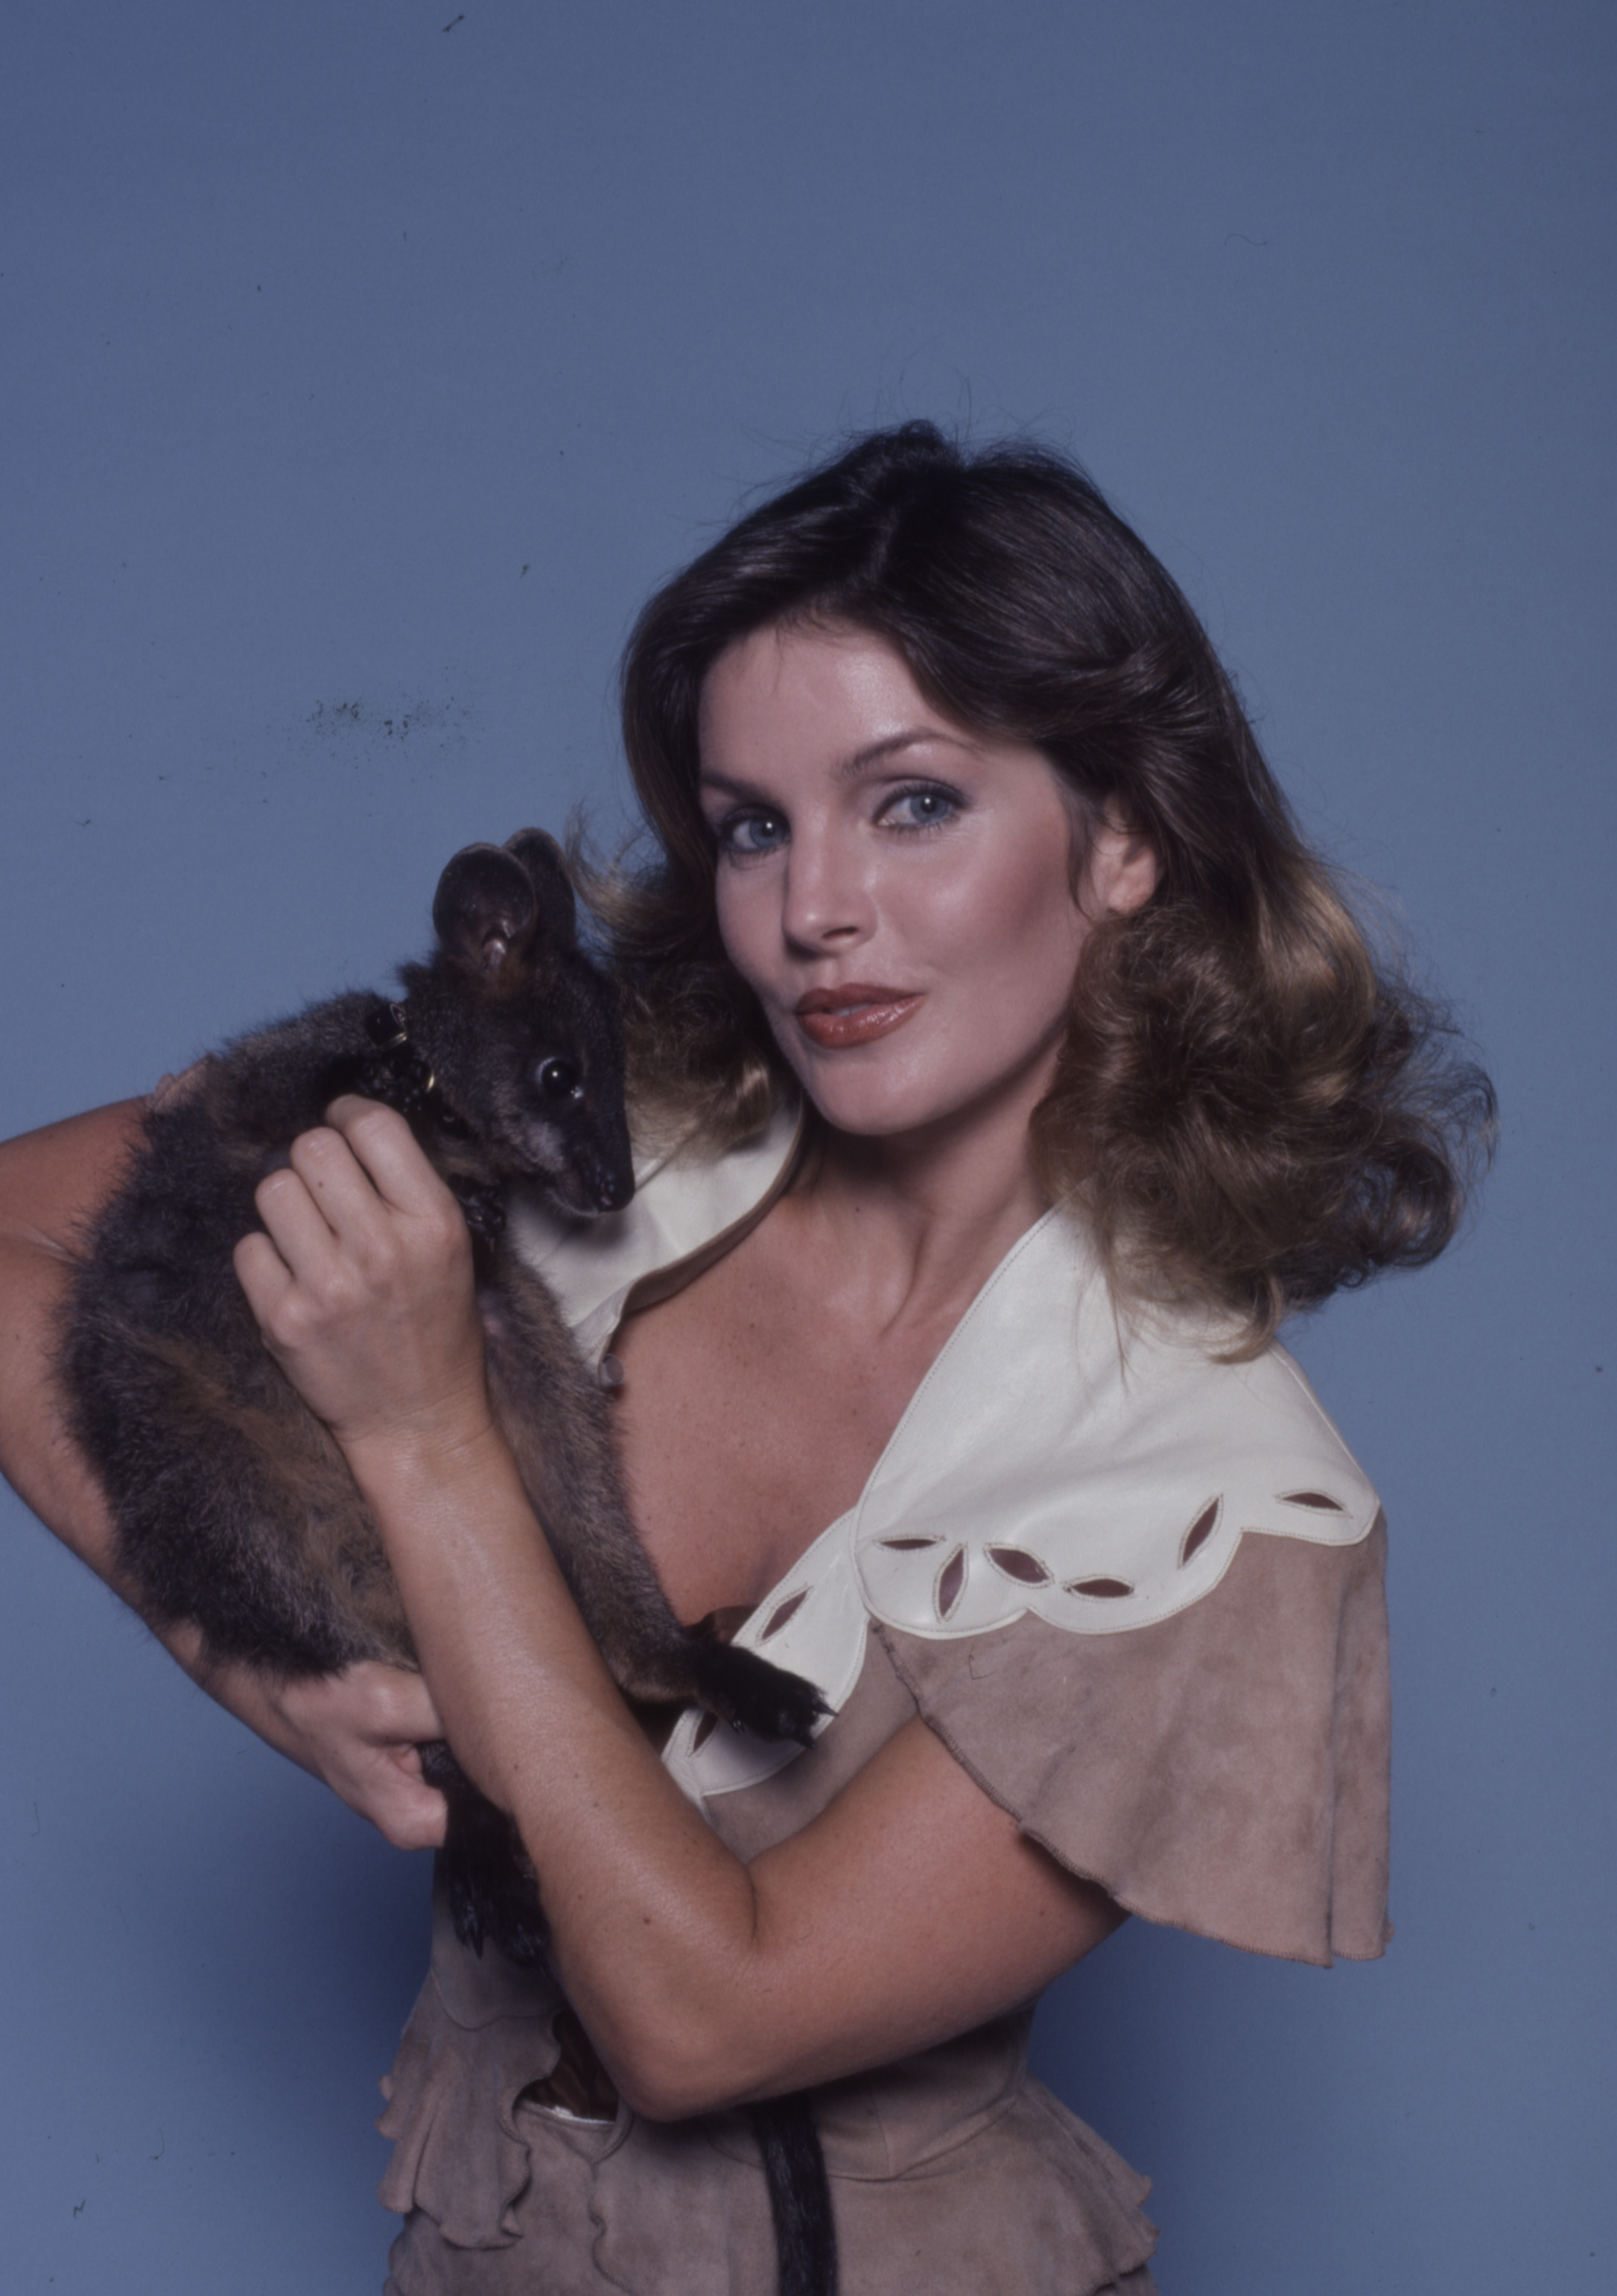 Foto promocional de Priscilla Presley para la serie de televisión de ABC "Those Amazing Animals" en Los Ángeles, California, en 1980. | Foto: Getty Images